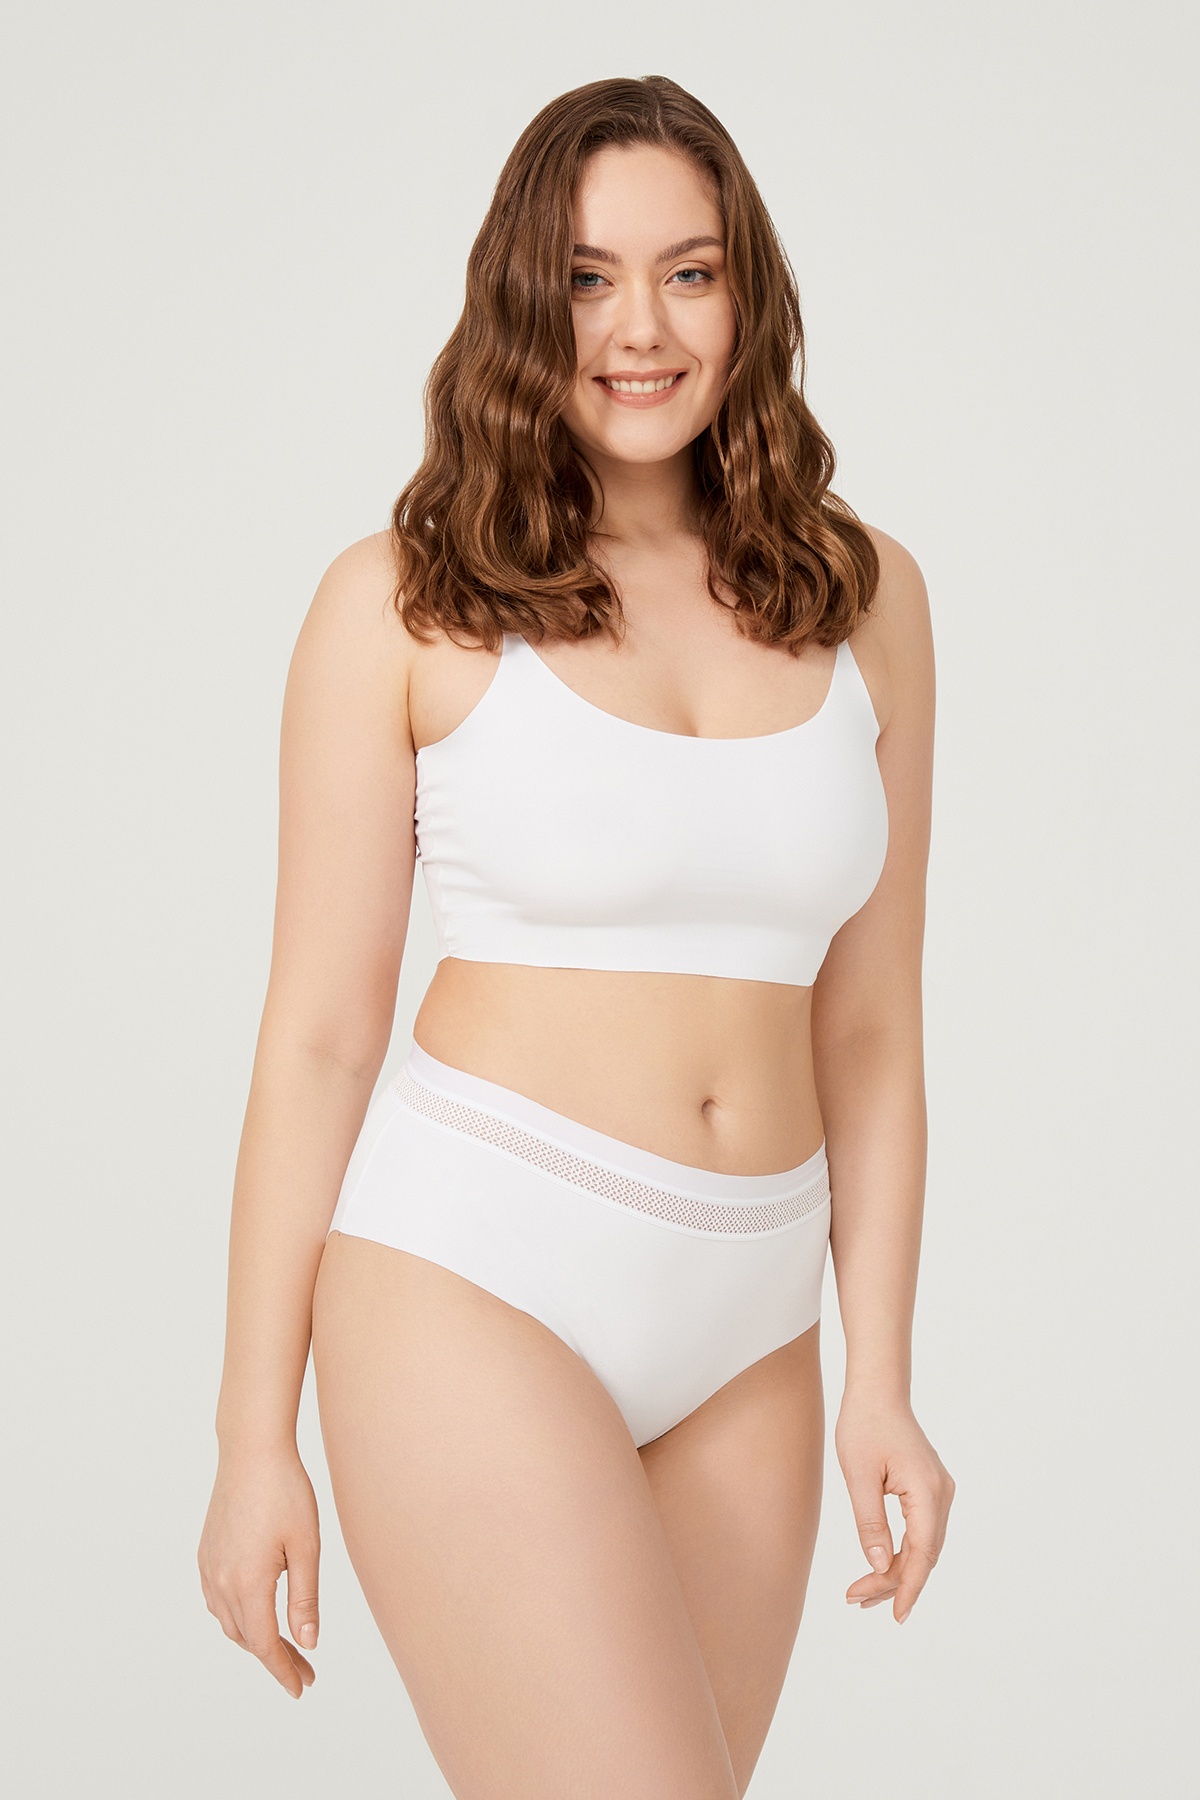 laser-cut-big-size-women-bikini-panty-with-net-patterned-waistband-ch6061-white-1-1